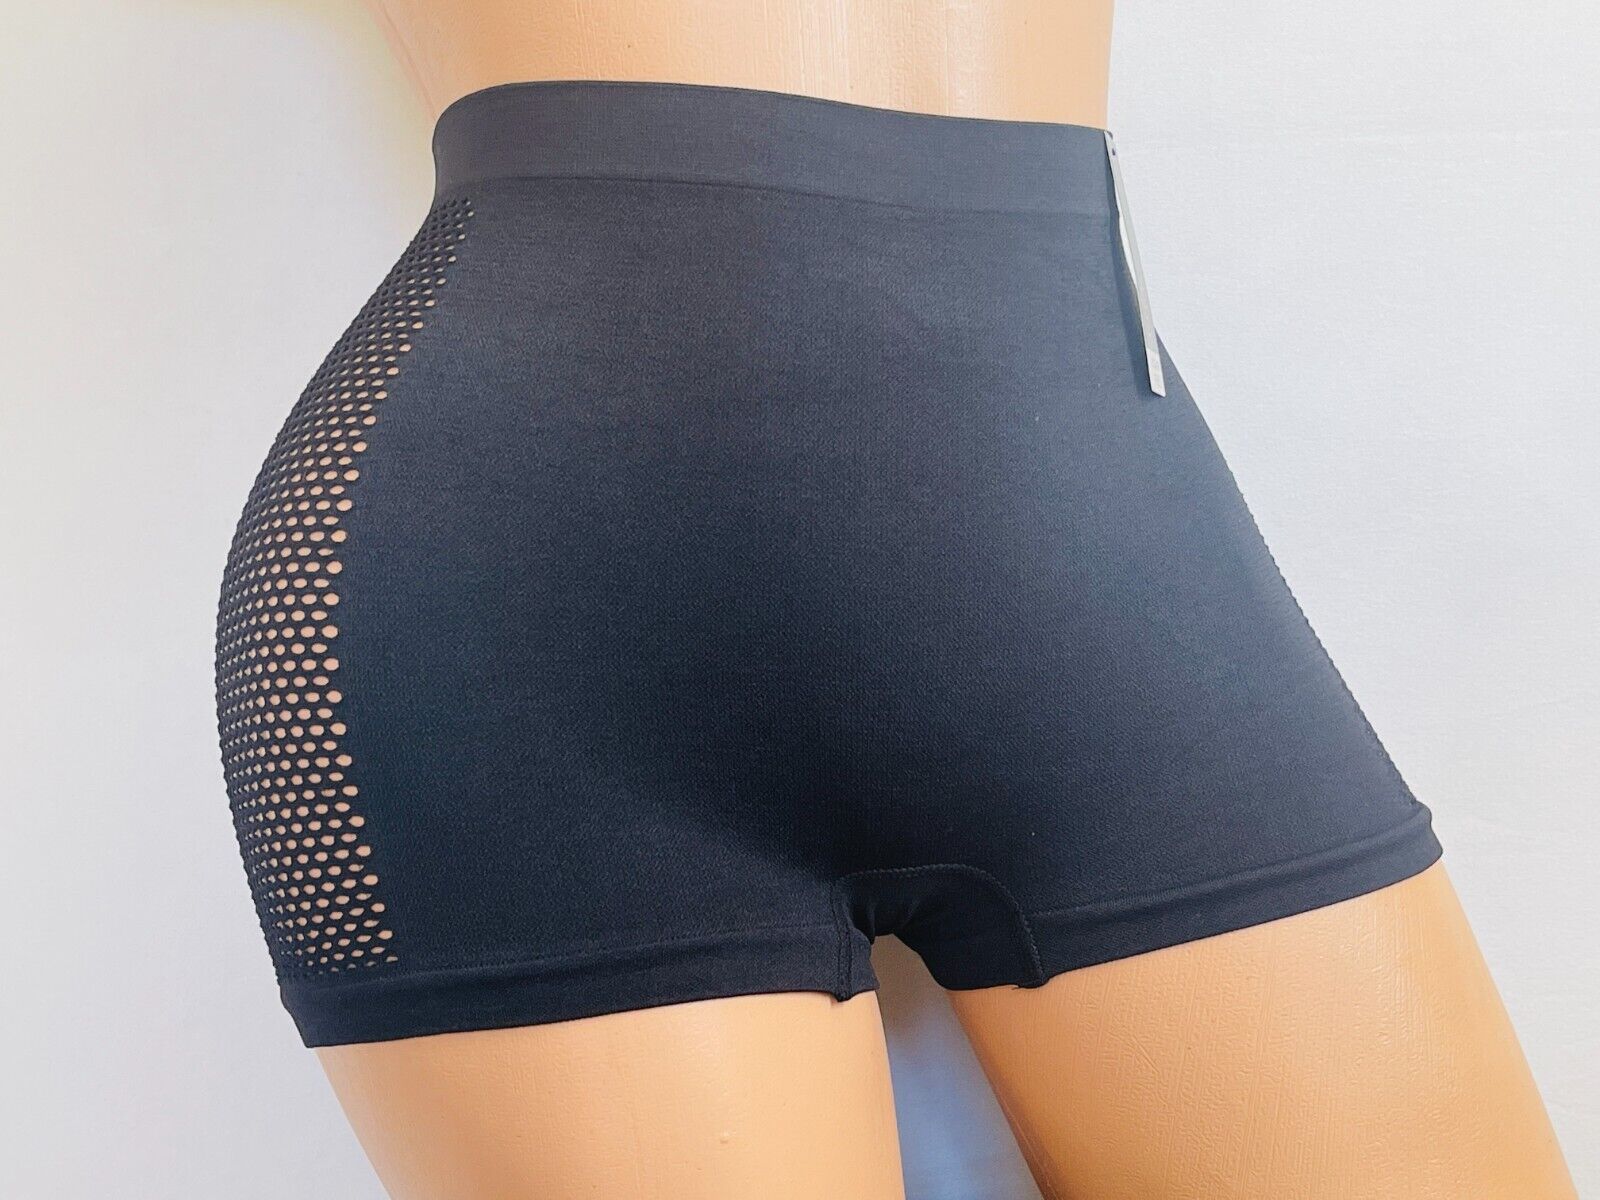 6 Boyshorts sport Active Wear Yoga Seamless Short undies shortie Underwear S-XL EVA - фотография #3